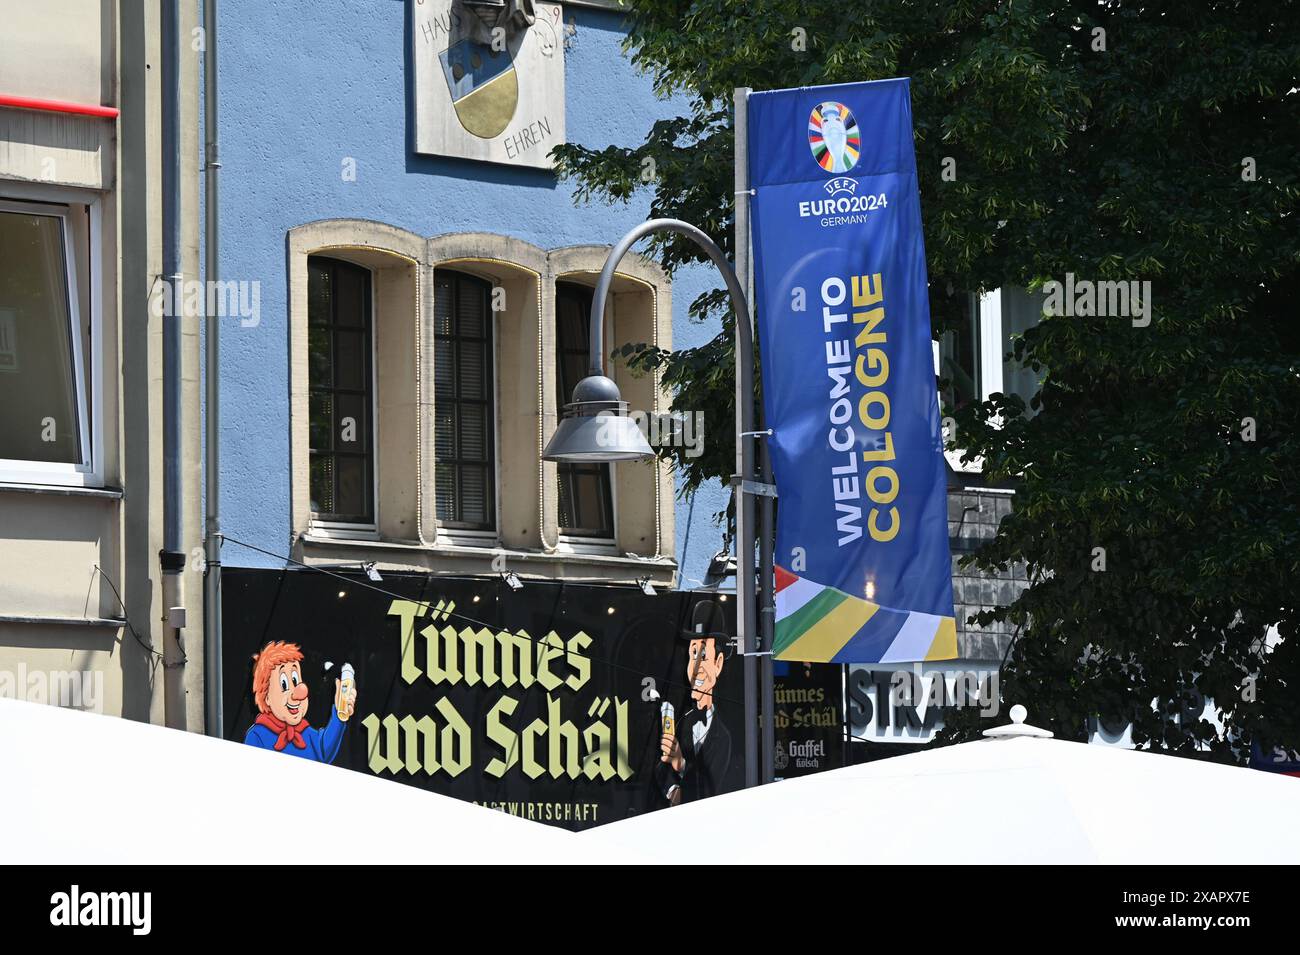 Flagge Fahne der UEFA Euro 2024 - Fussball Europameisterschaft mit der Aufschrift Willkommen in Köln dahinter zwei kölsche Originale: Tünnes und Schäl. *** Flagge der UEFA Euro 2024 Fußball-Europameisterschaft mit der Inschrift Willkommen in Köln dahinter zwei Kölner Originale Tünnes und Schäl Stockfoto